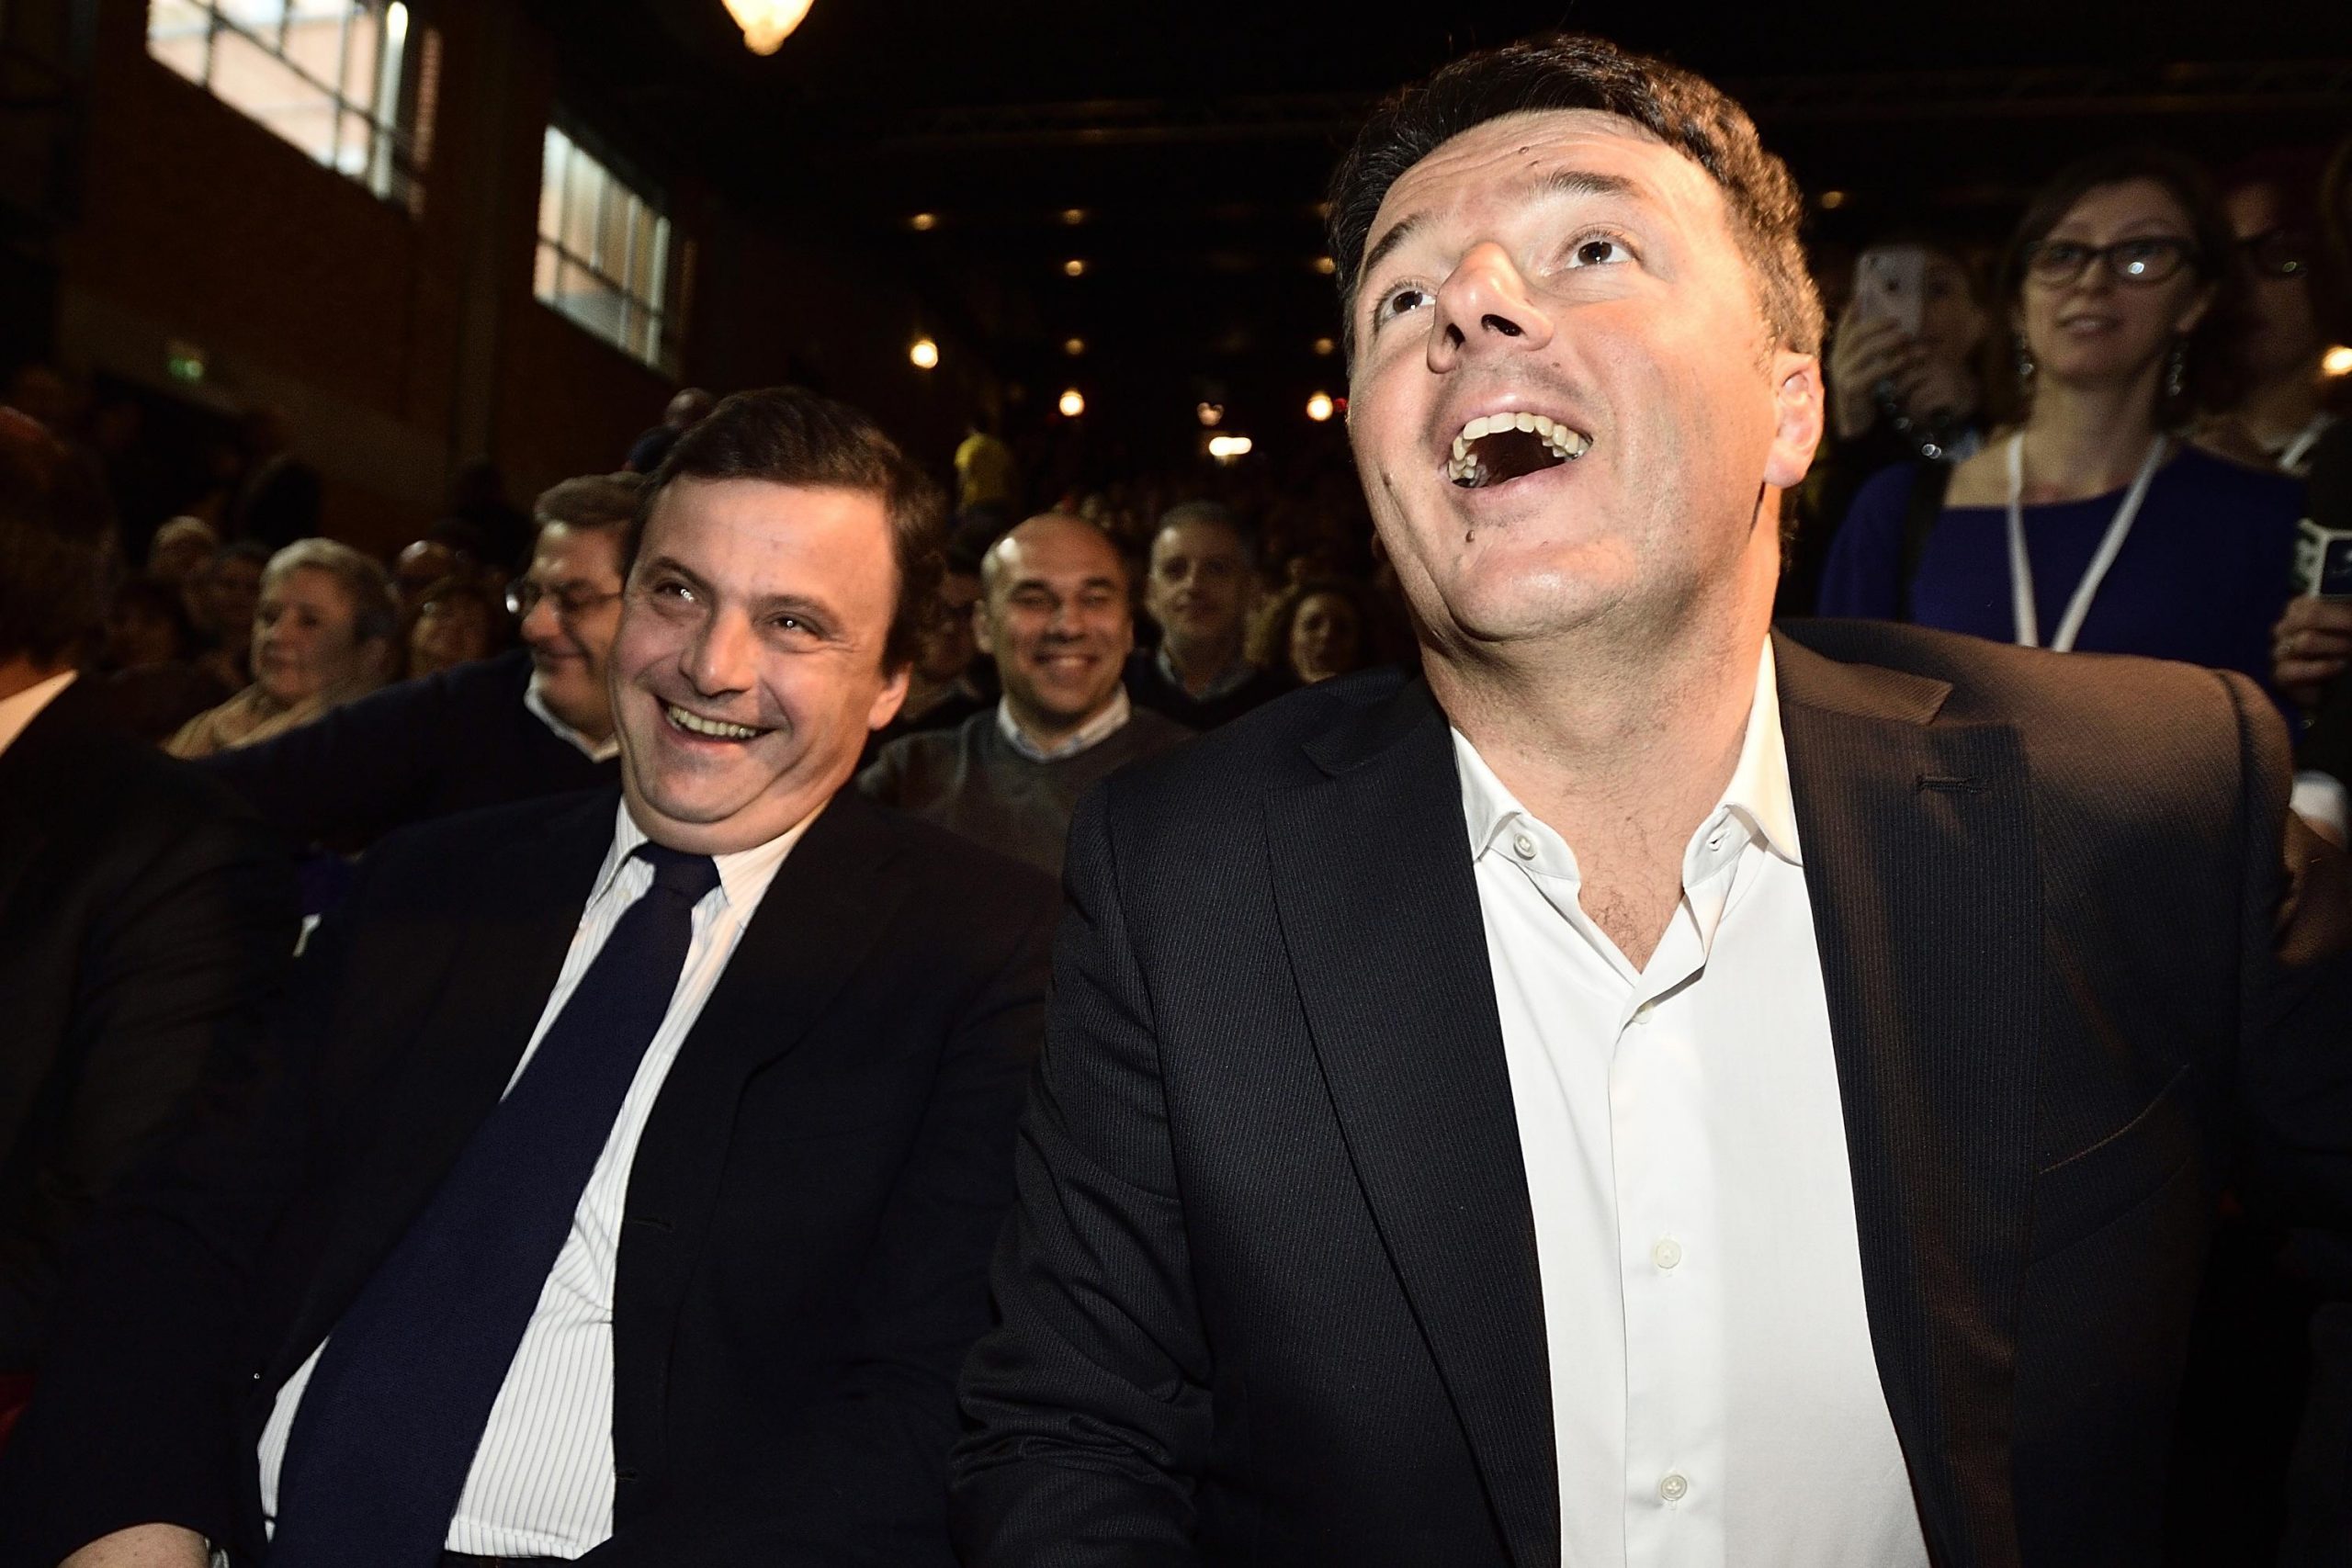 Renzi esulta per la rottura di Calenda con il Pd e pensa ad un'alleanza tra umili: "Terzo polo"